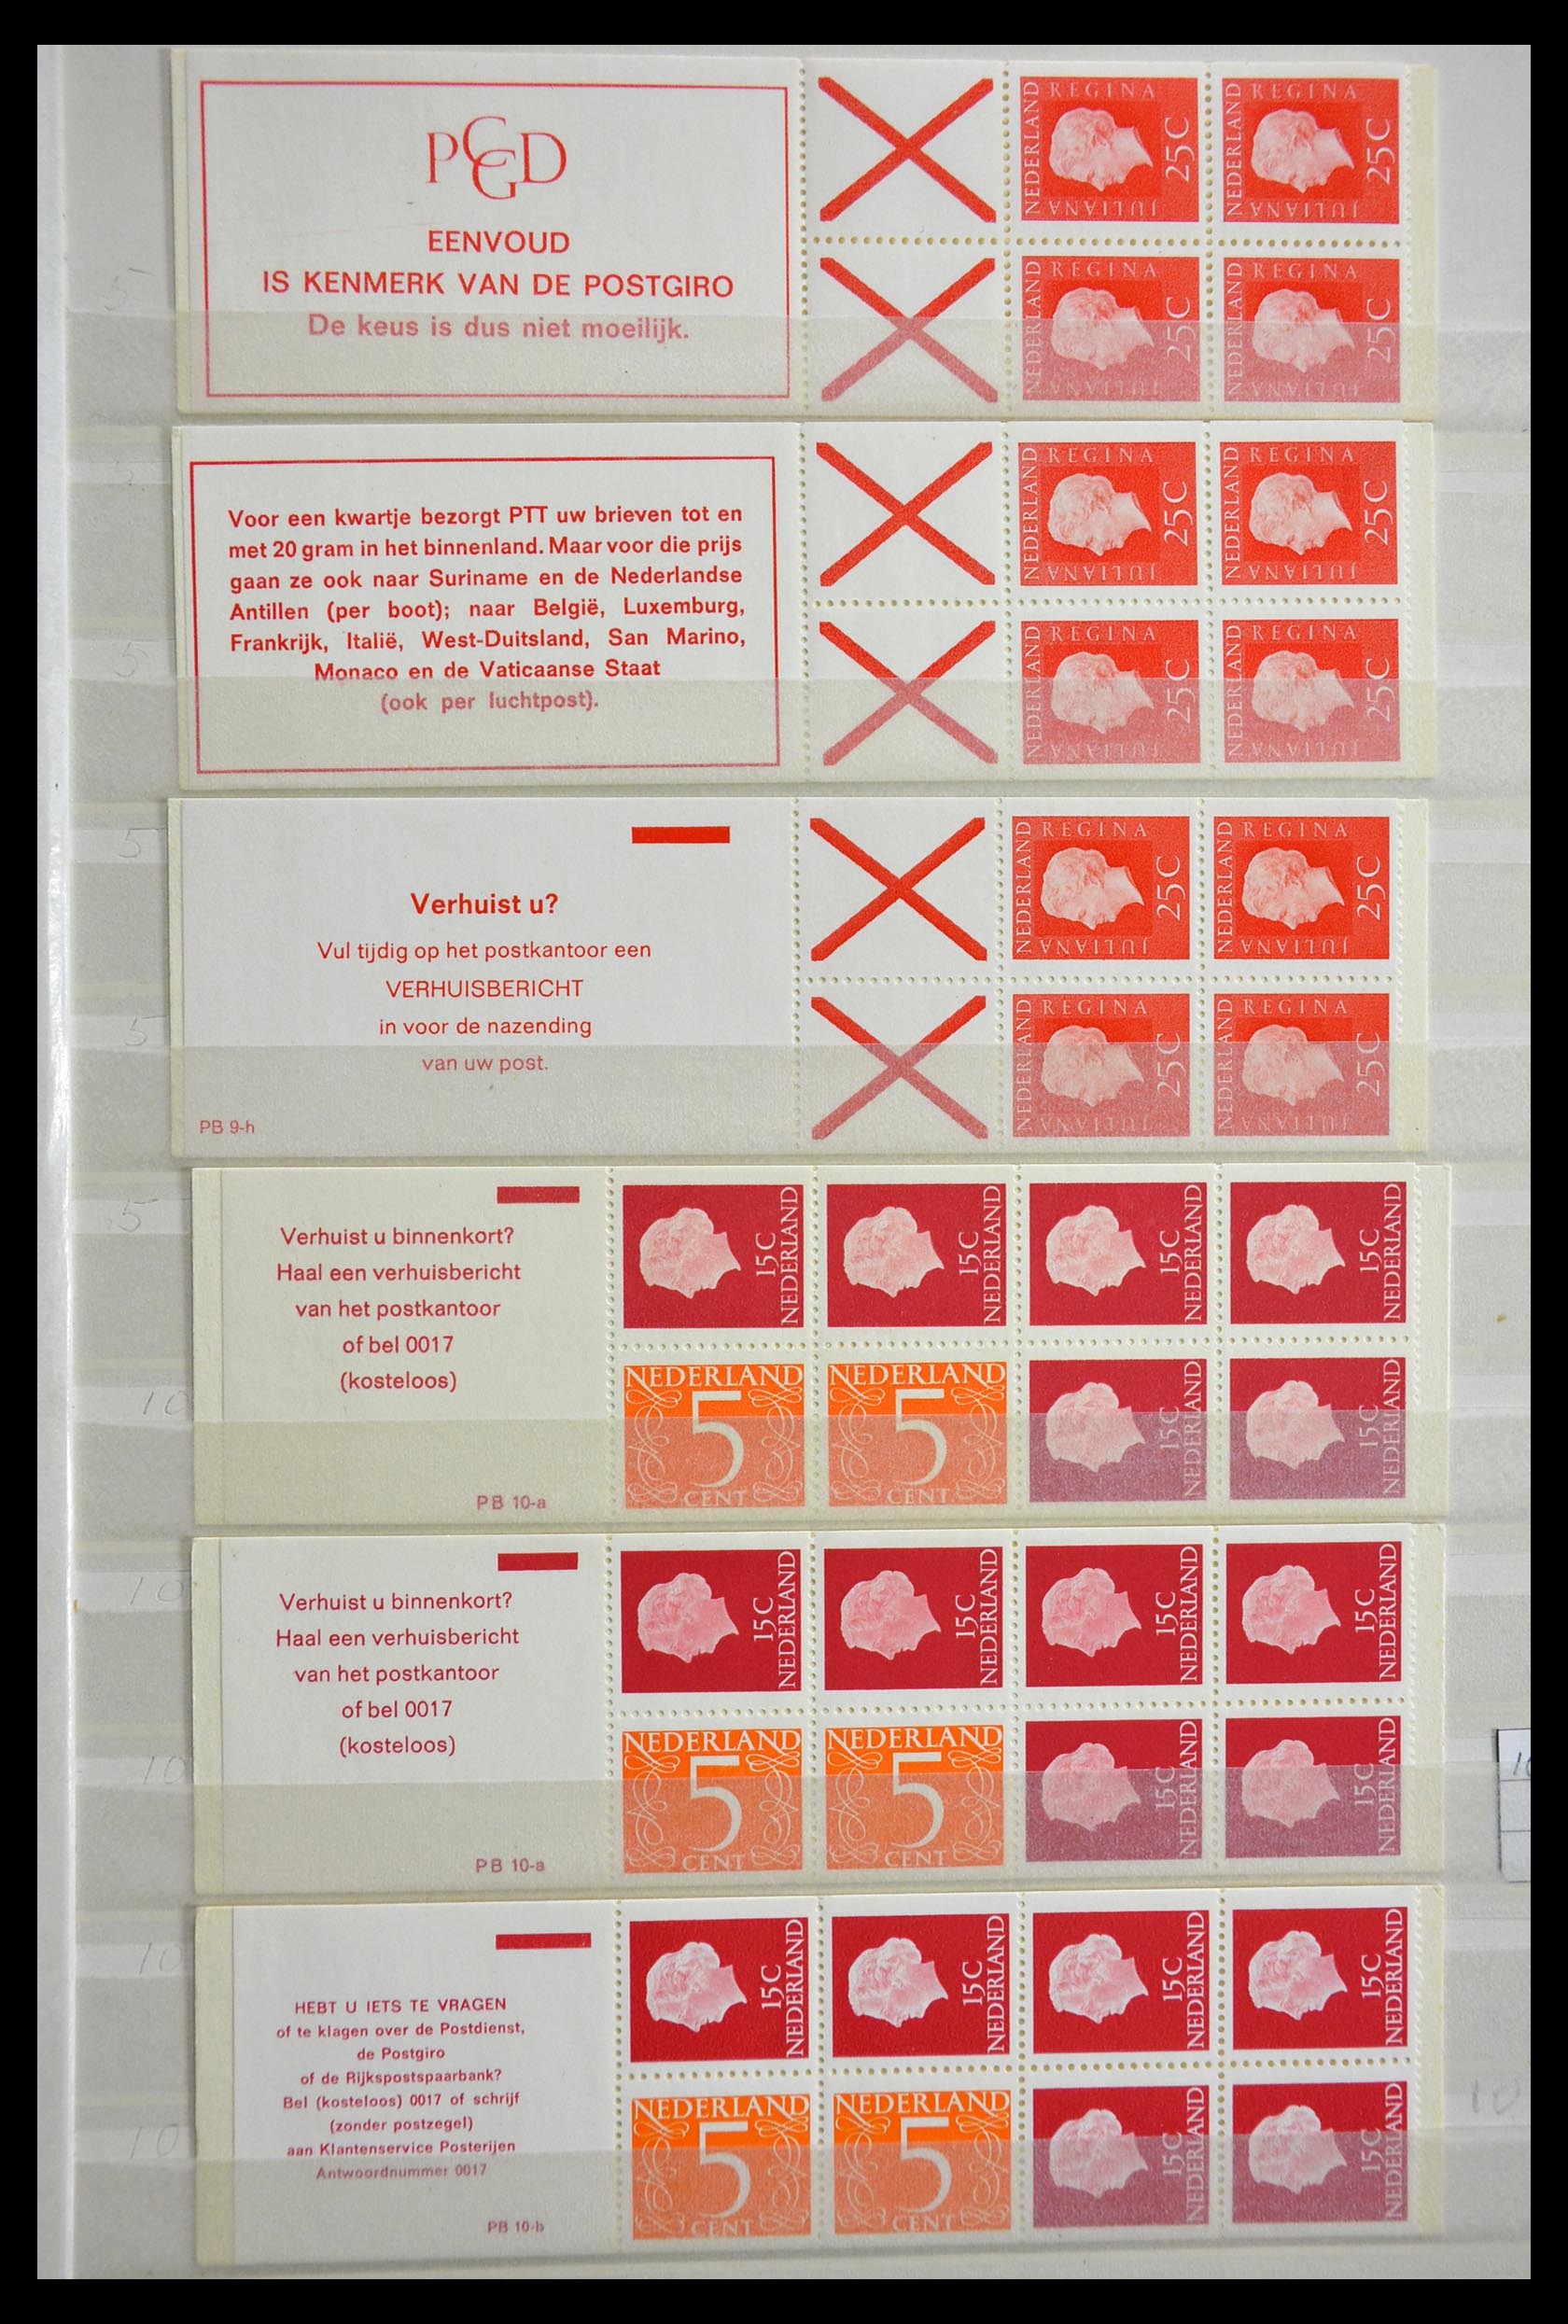 29387 007 - 29387 Netherlands stamp booklets 1964-2014.